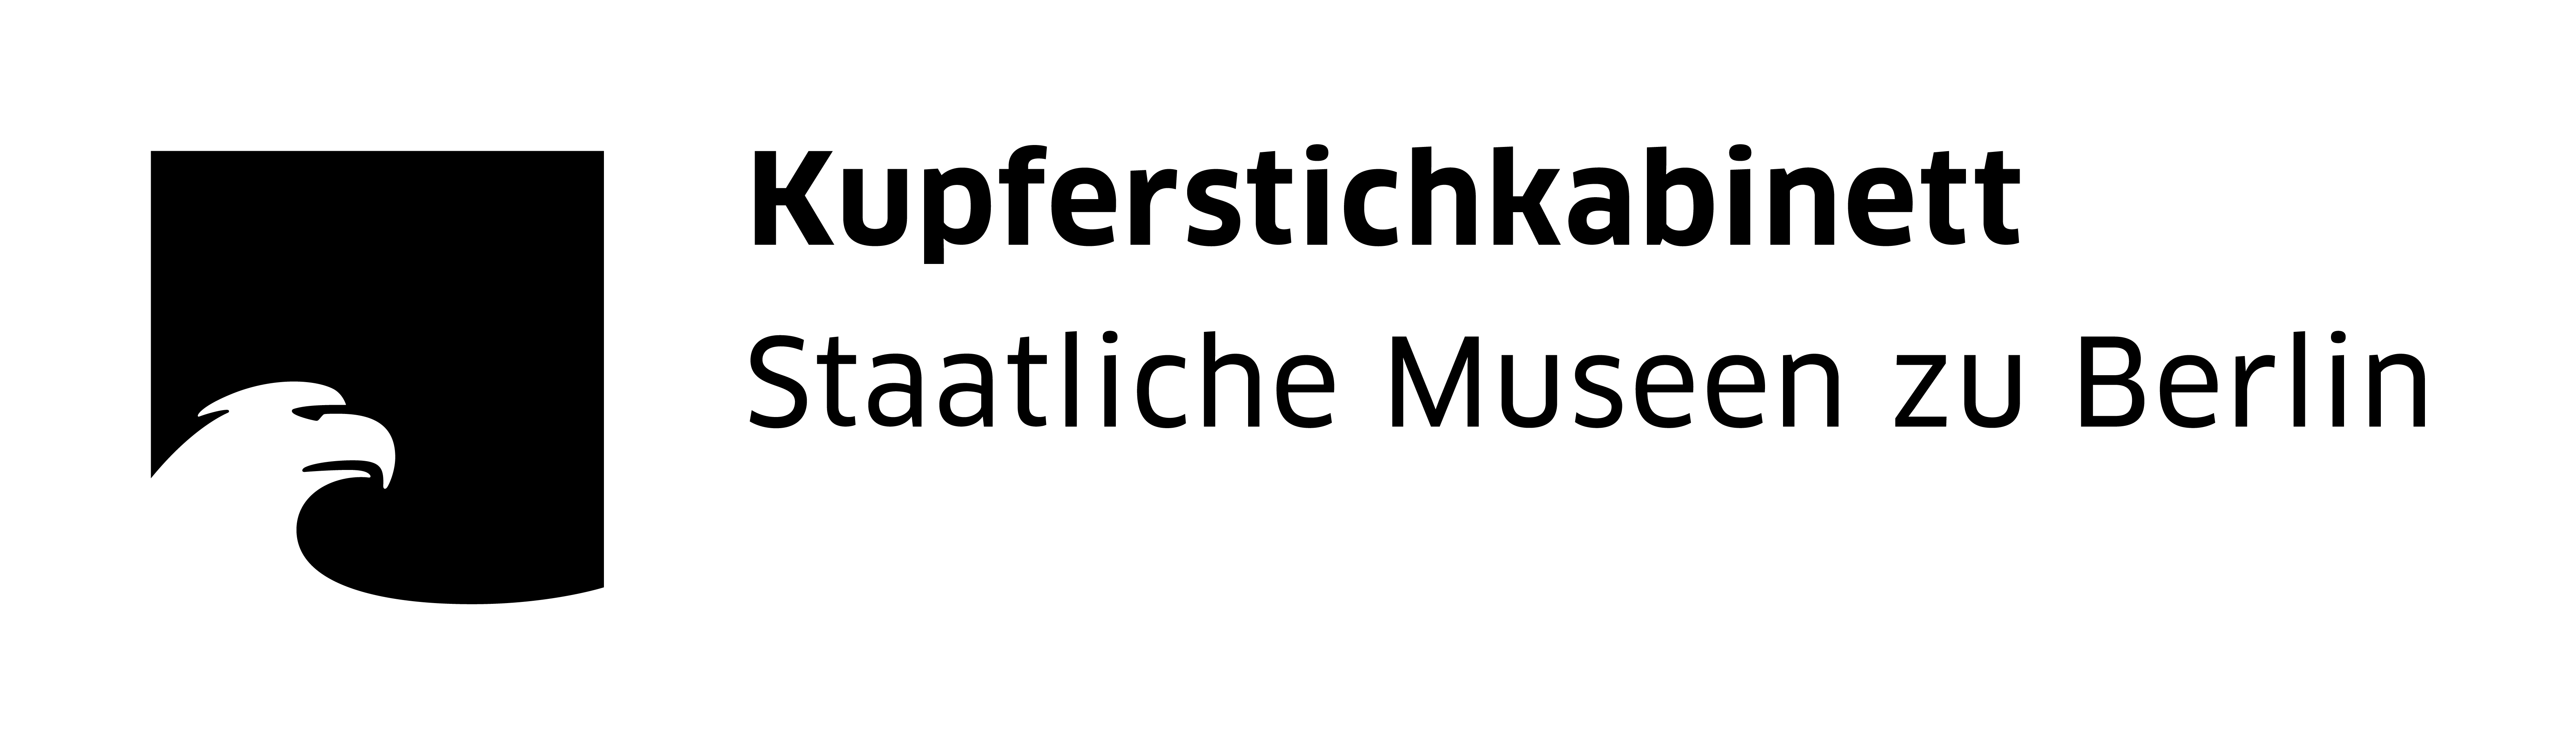 Staatliche Museen zu Berlin, Kupferstichkabinett